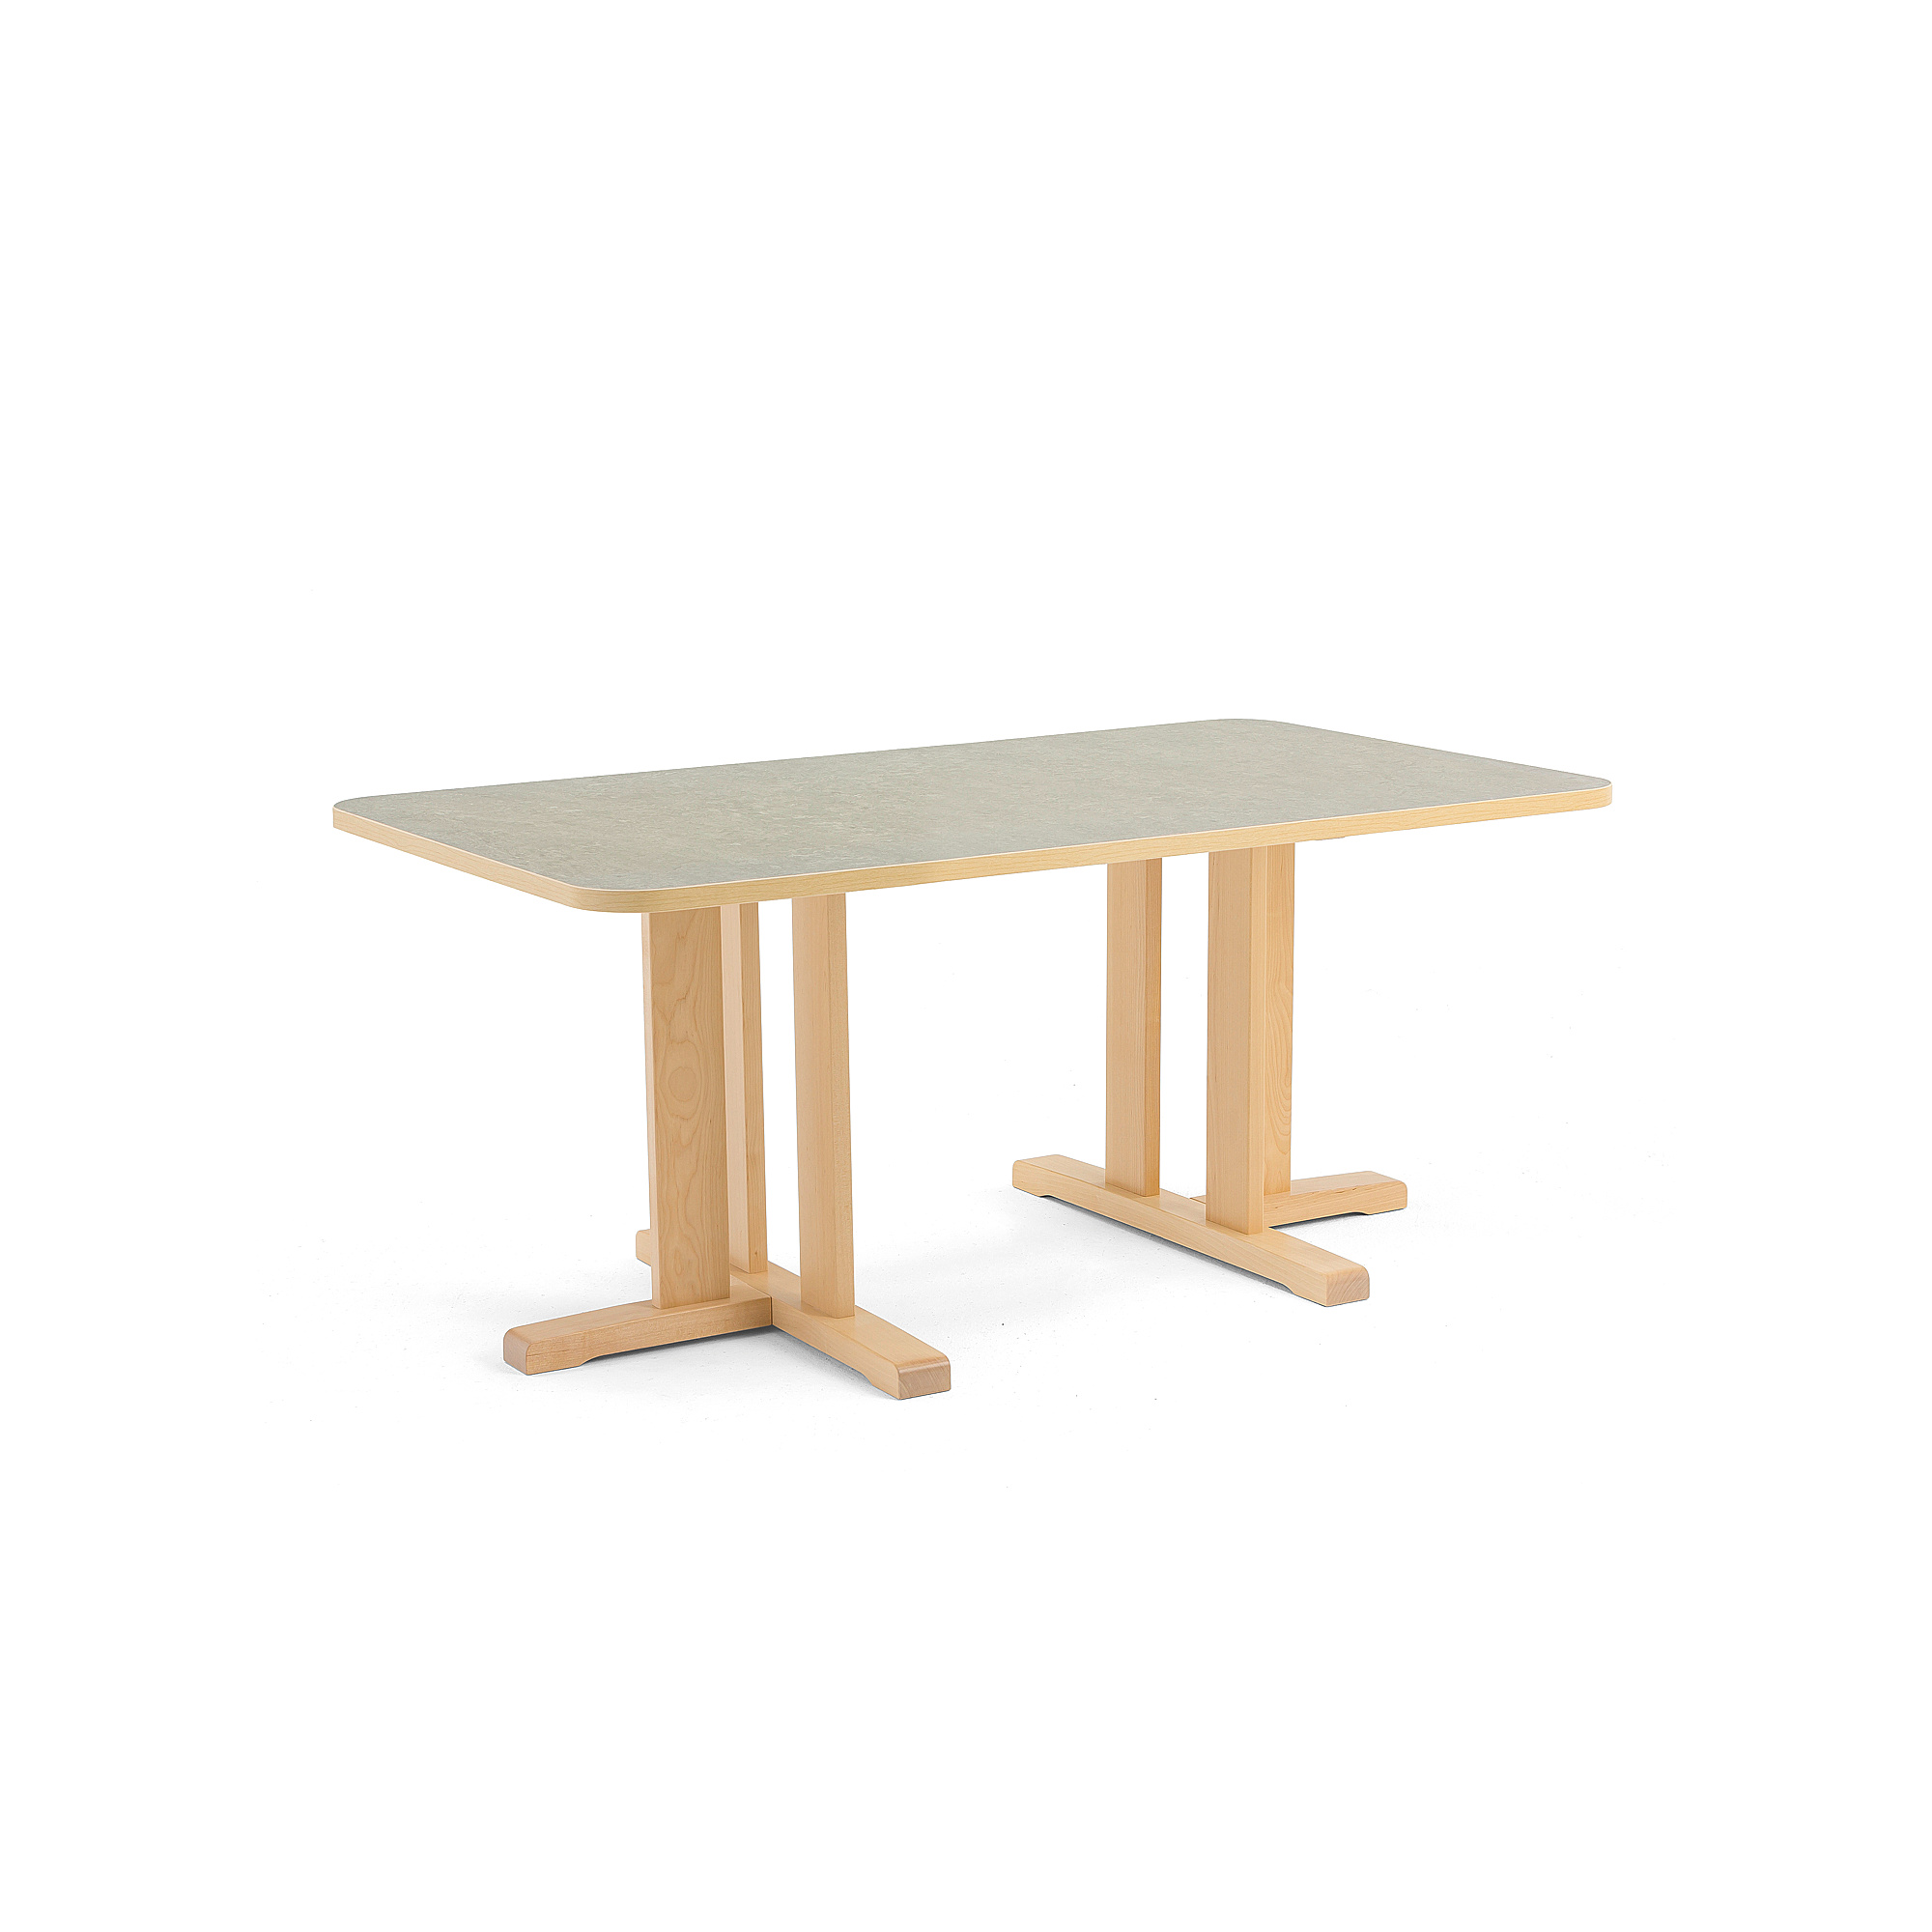 Stůl KUPOL, 1400x800x600 mm, obdélník, akustické linoleum, bříza/šedá